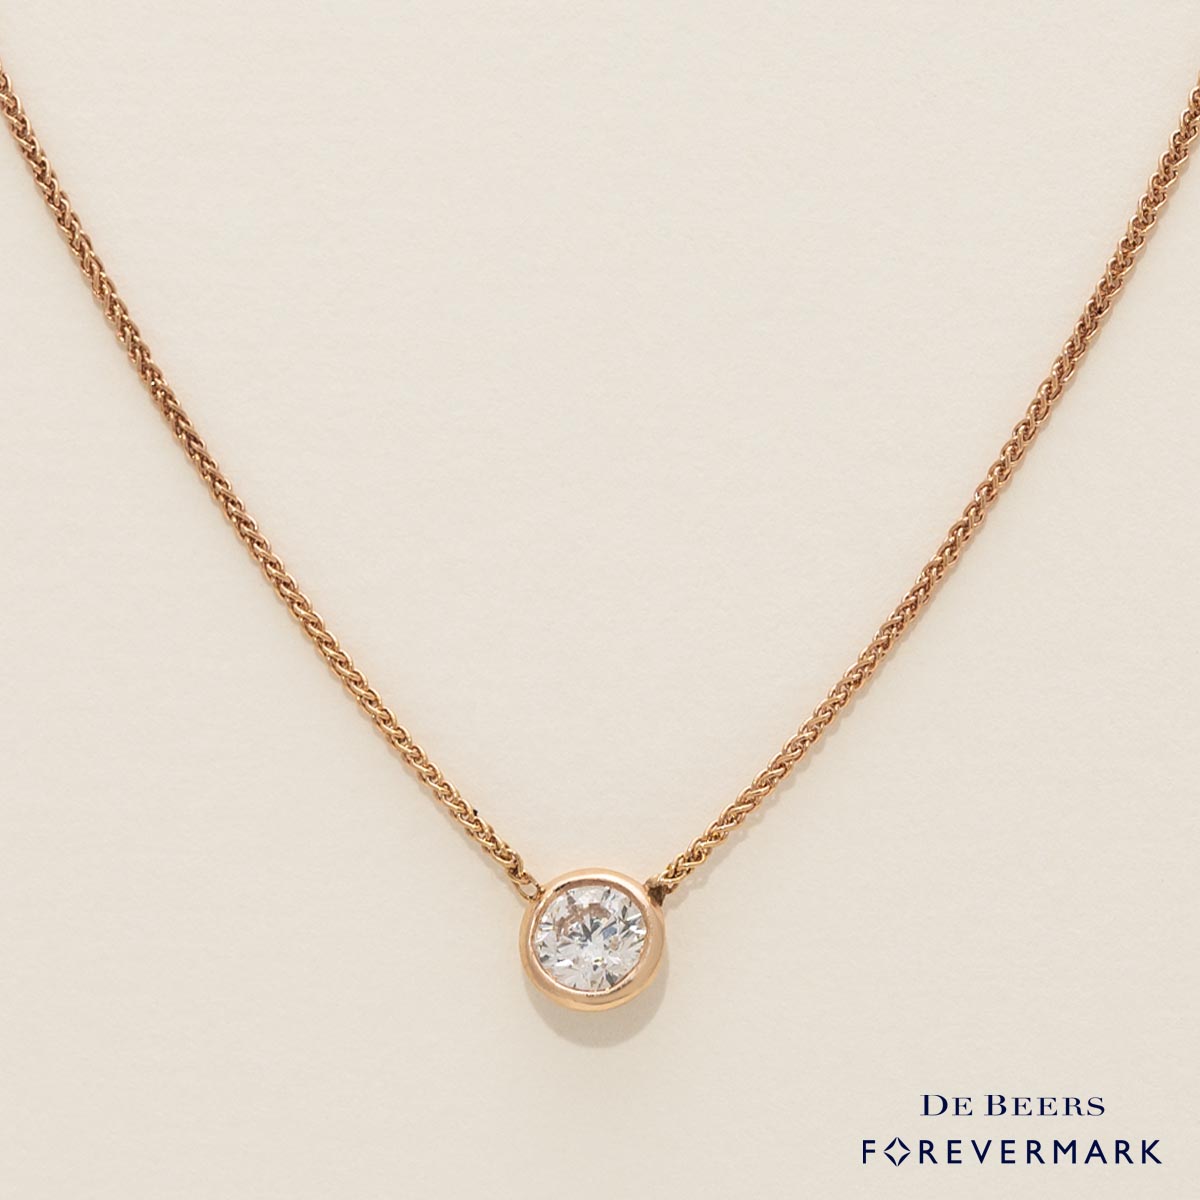 De Beers Forevermark Diamond Bezel Set Necklace in 18kt Rose Gold (1/3ct tw)